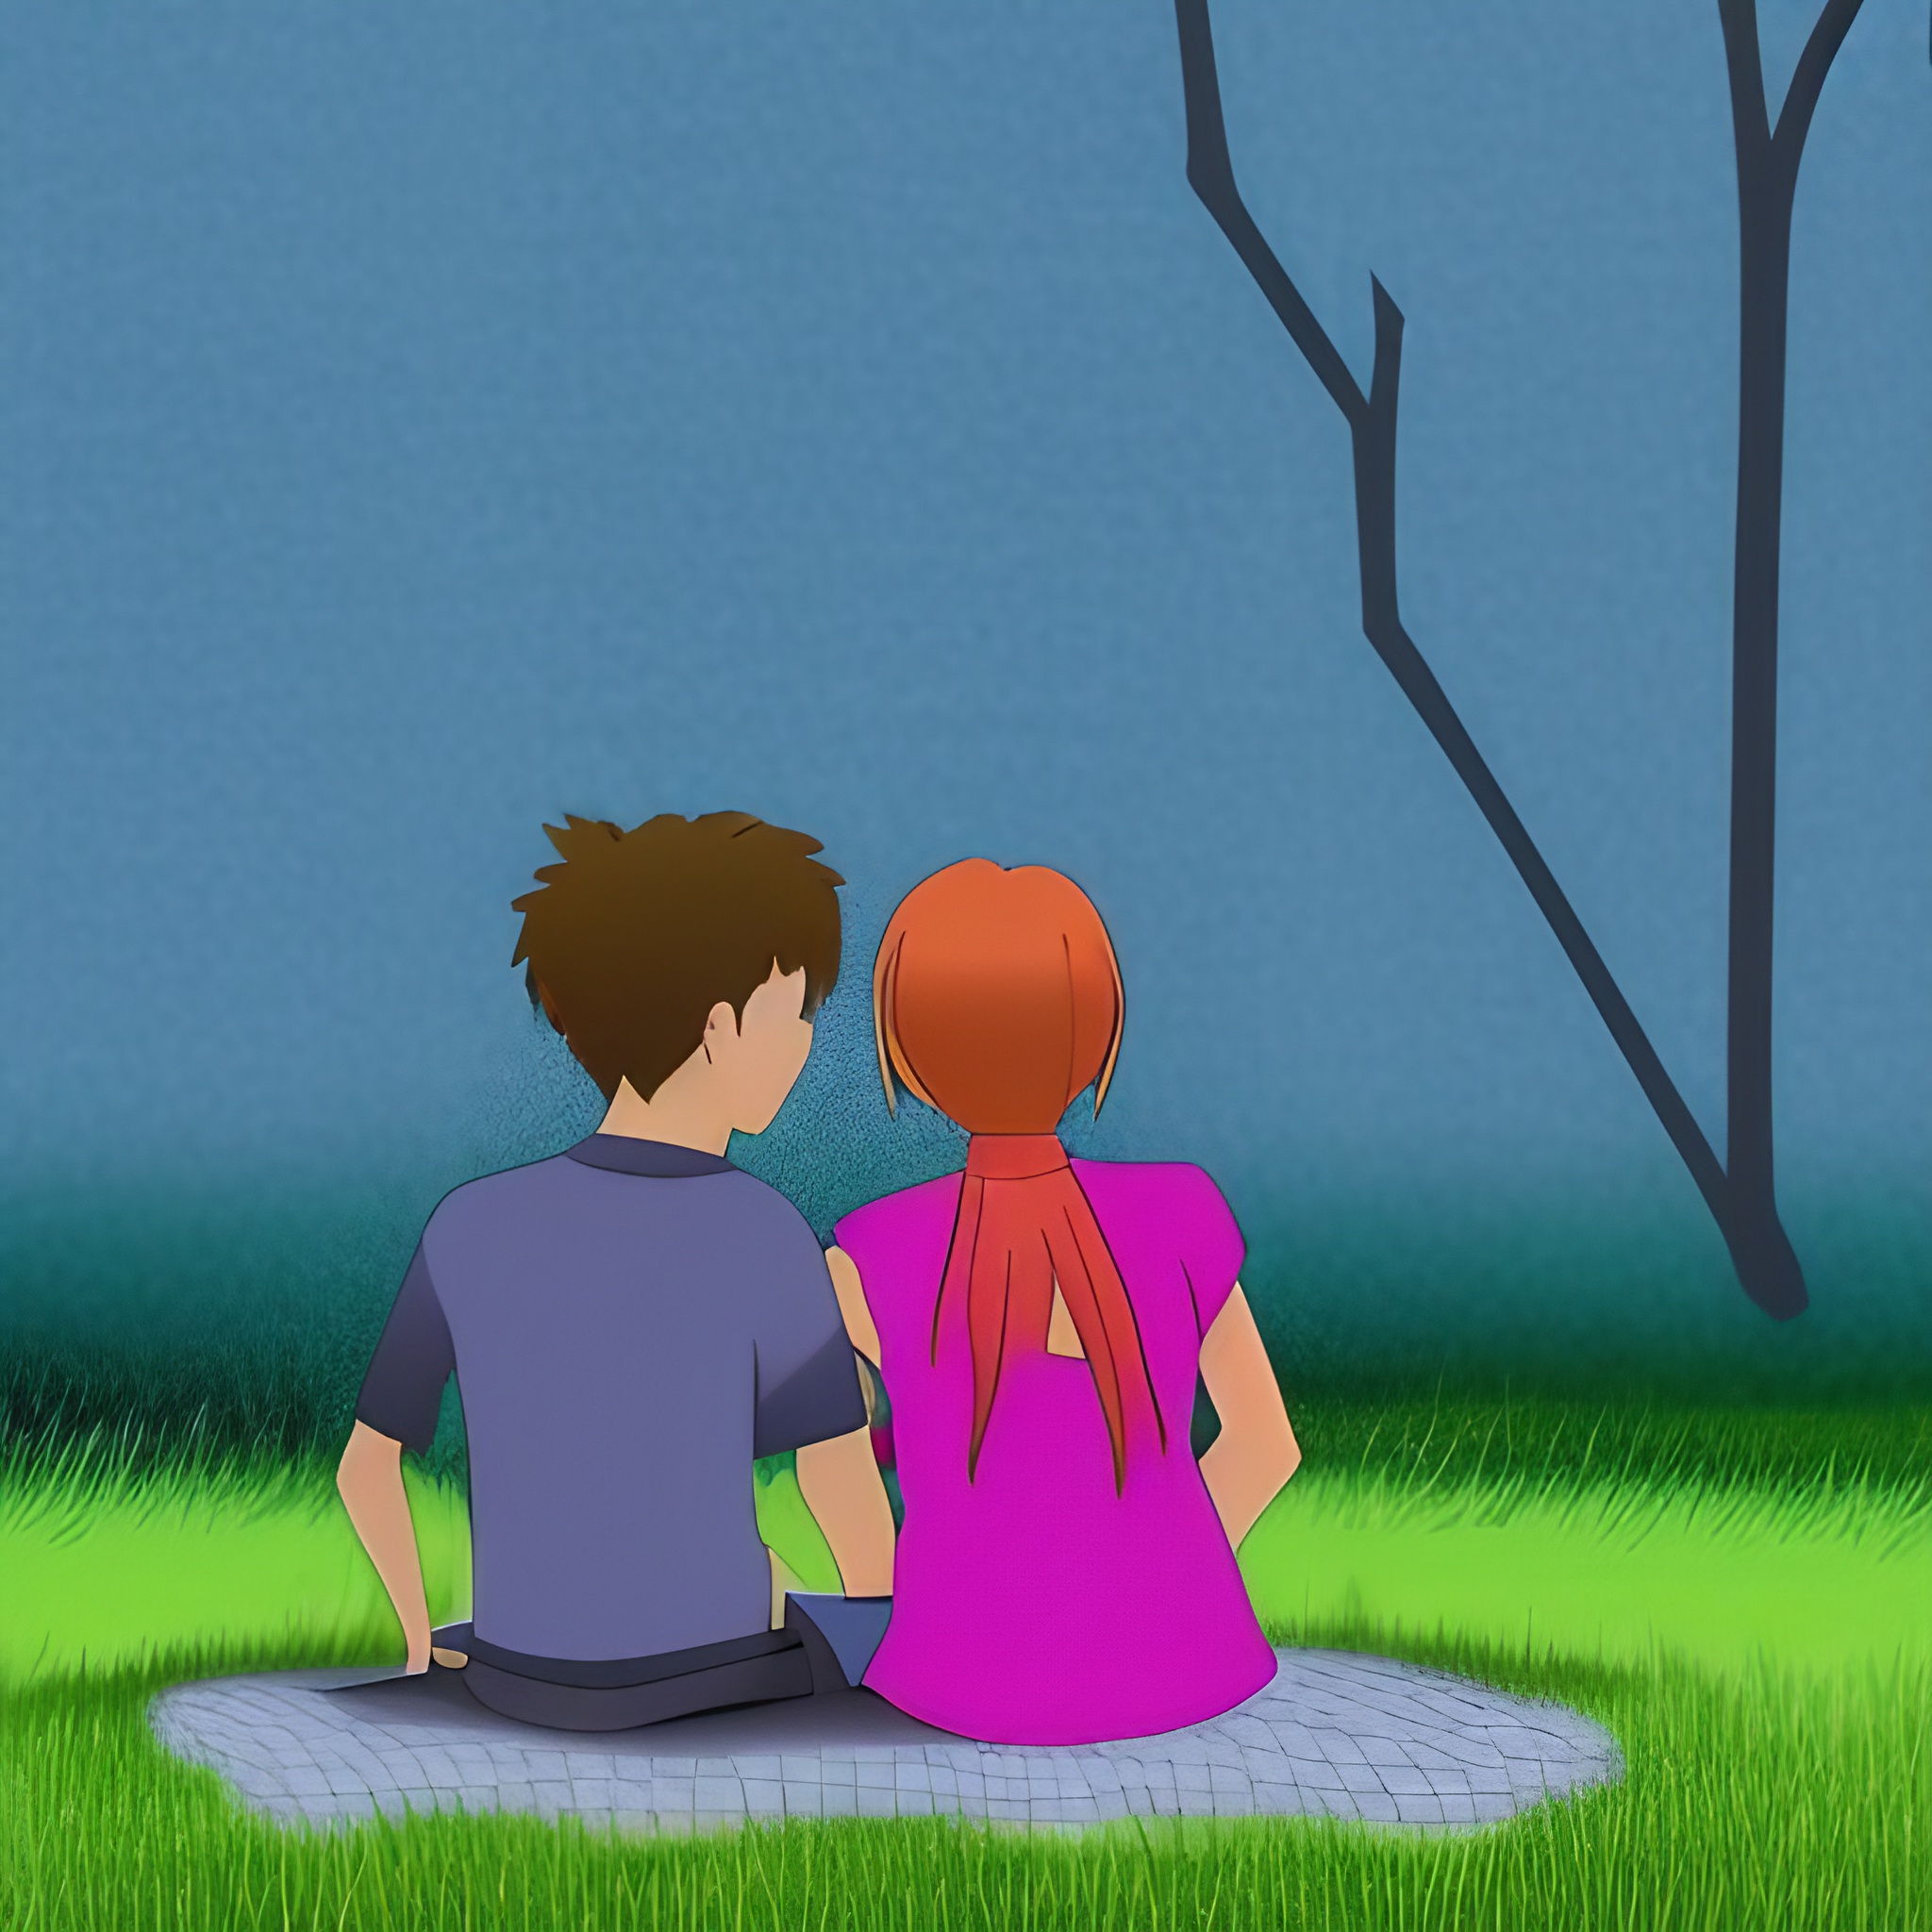 grafika w stylu kreskówkowym na grafice widać dziewczynę rozmawiającą z chłopakiem w parku